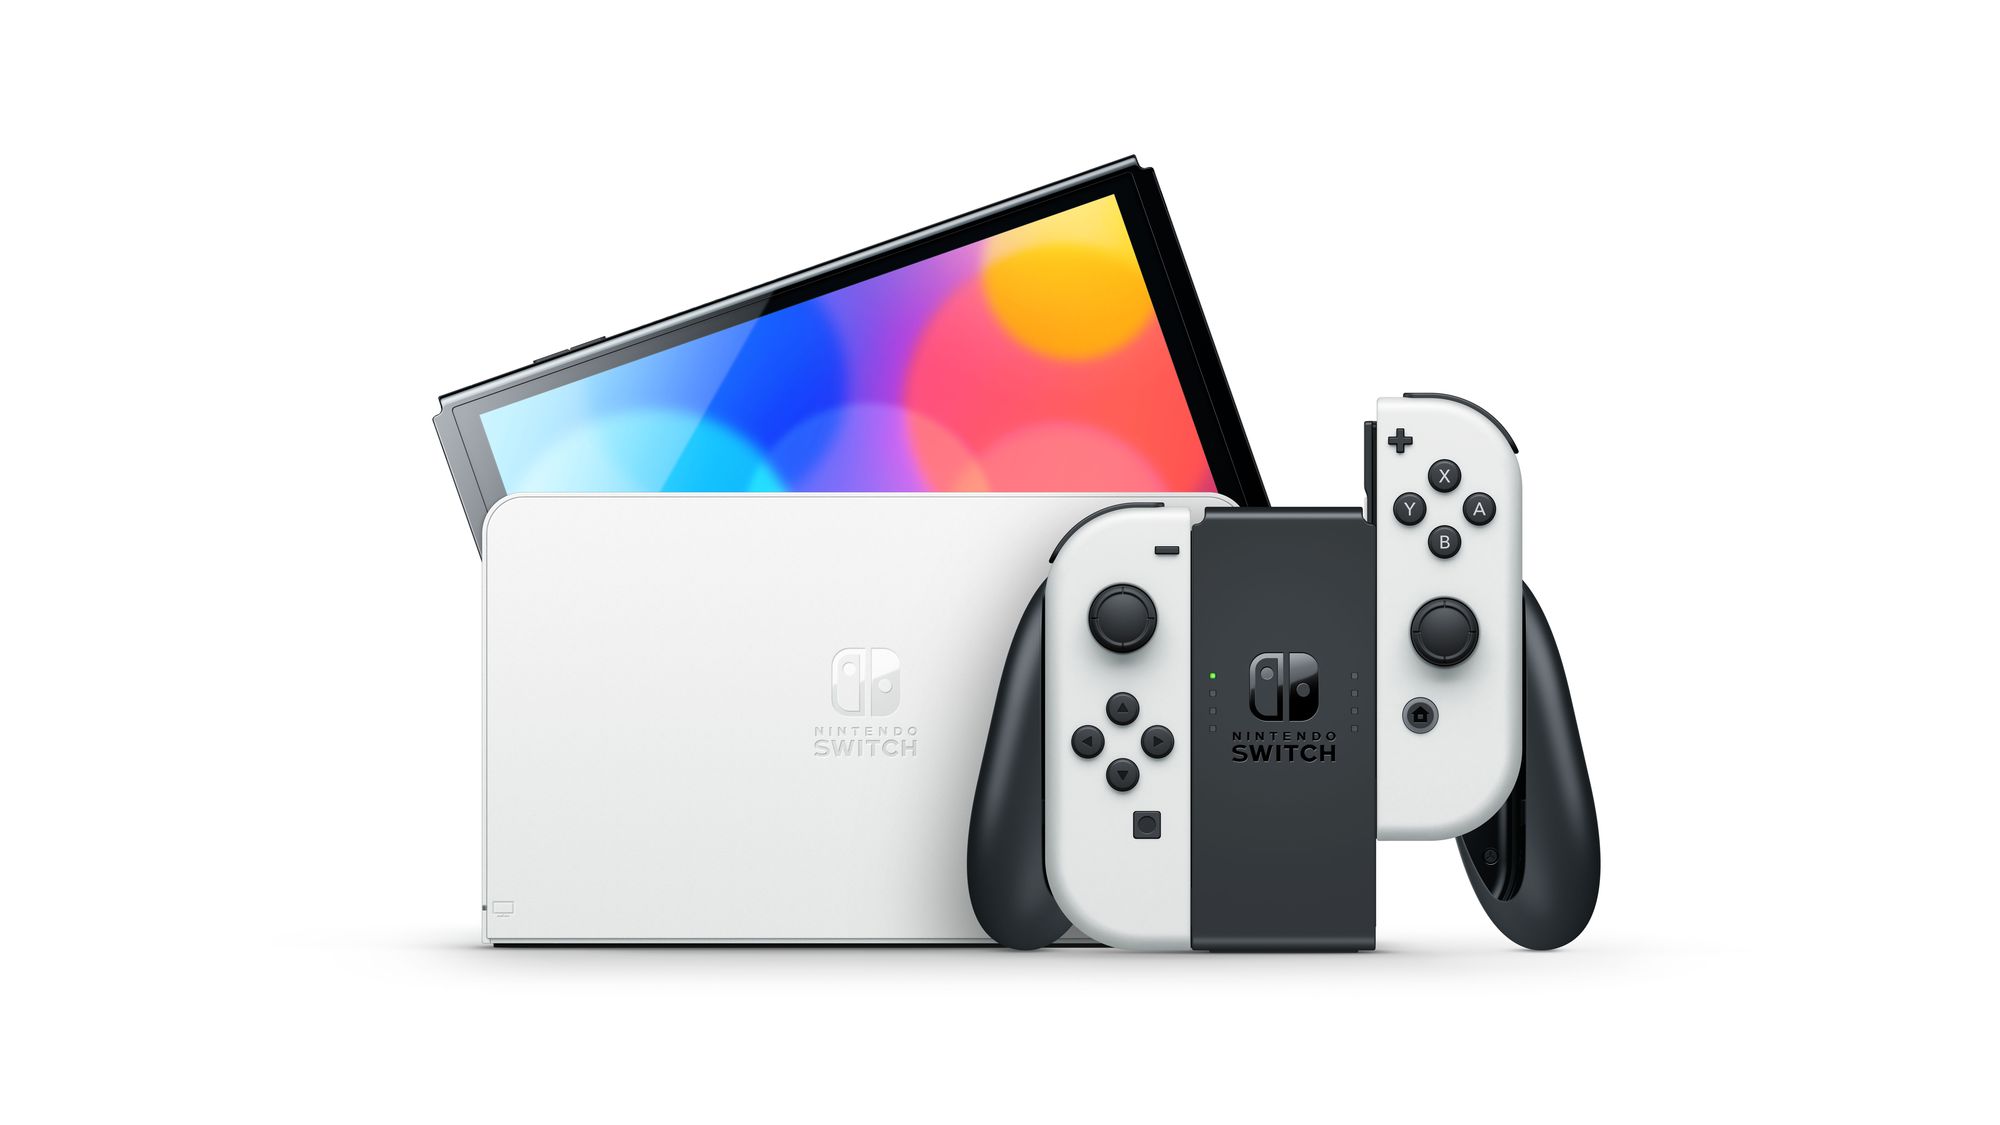 Nintendo Switch modello OLED – La nostra recensione